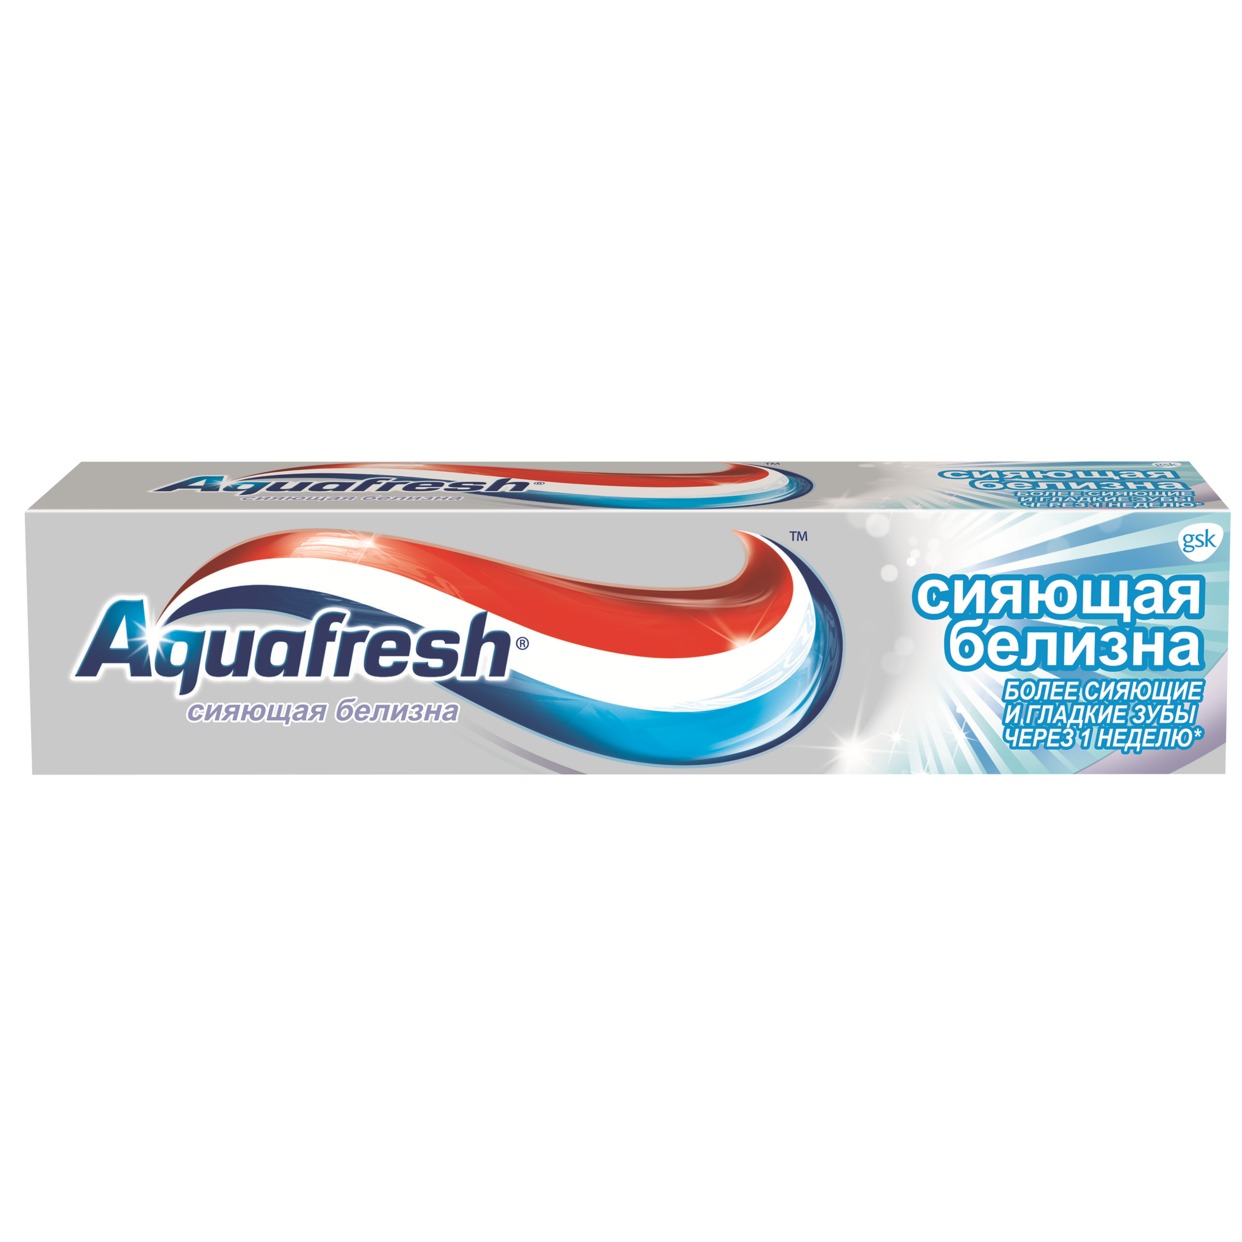 Зубная паста Aquafresh, сияющая белизна, 100 мл по акции в Пятерочке